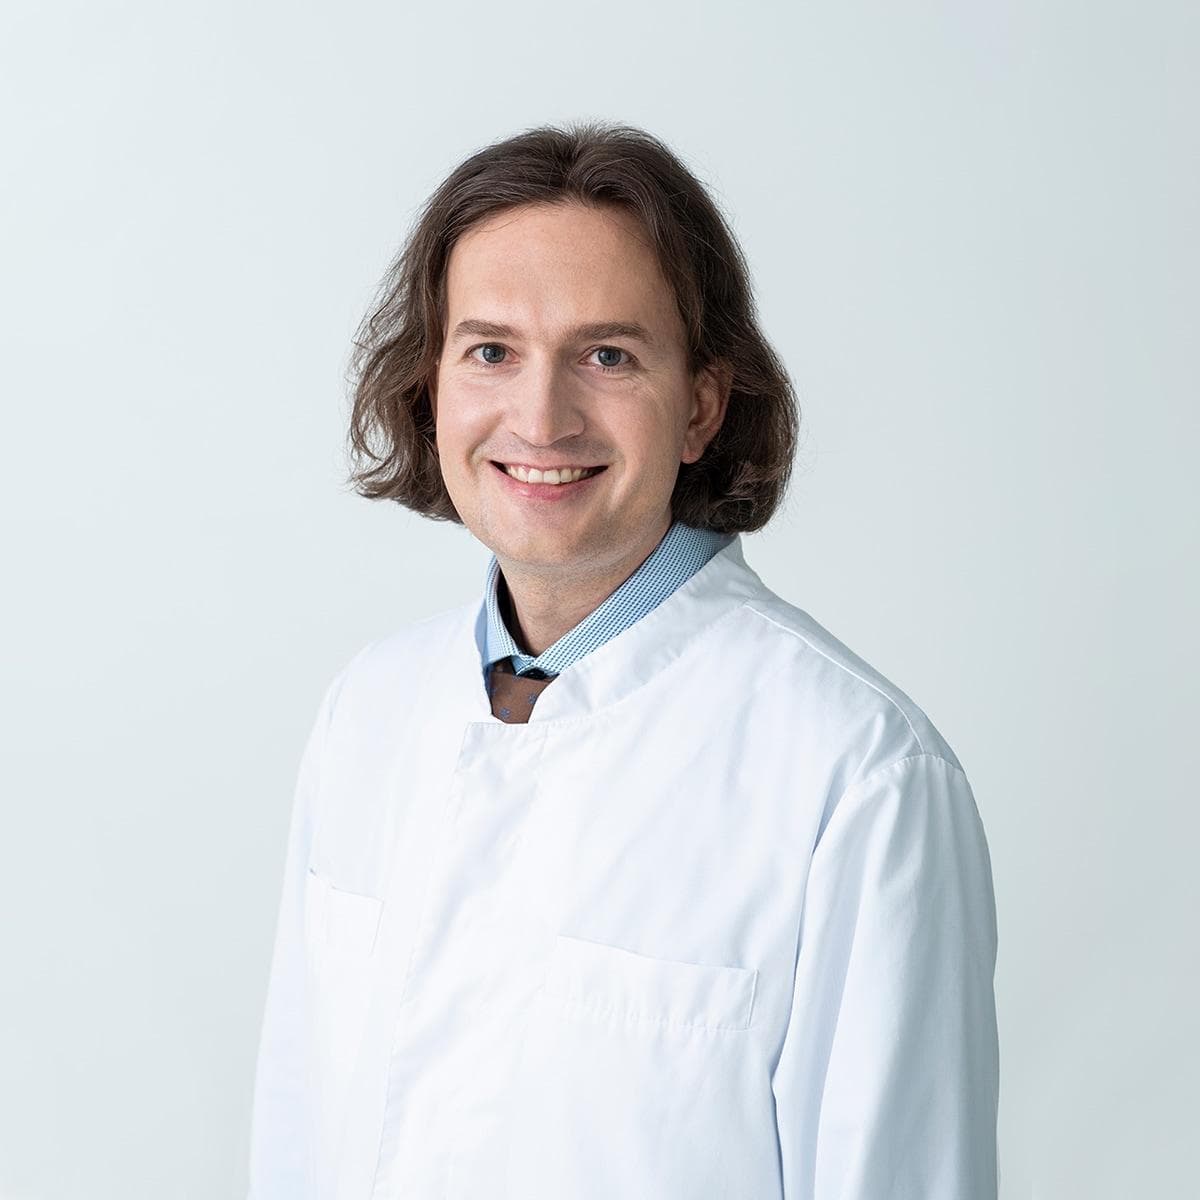 Ophthalmologist-microsurgeon Paulius Rudalevičius, D.M.Sc.